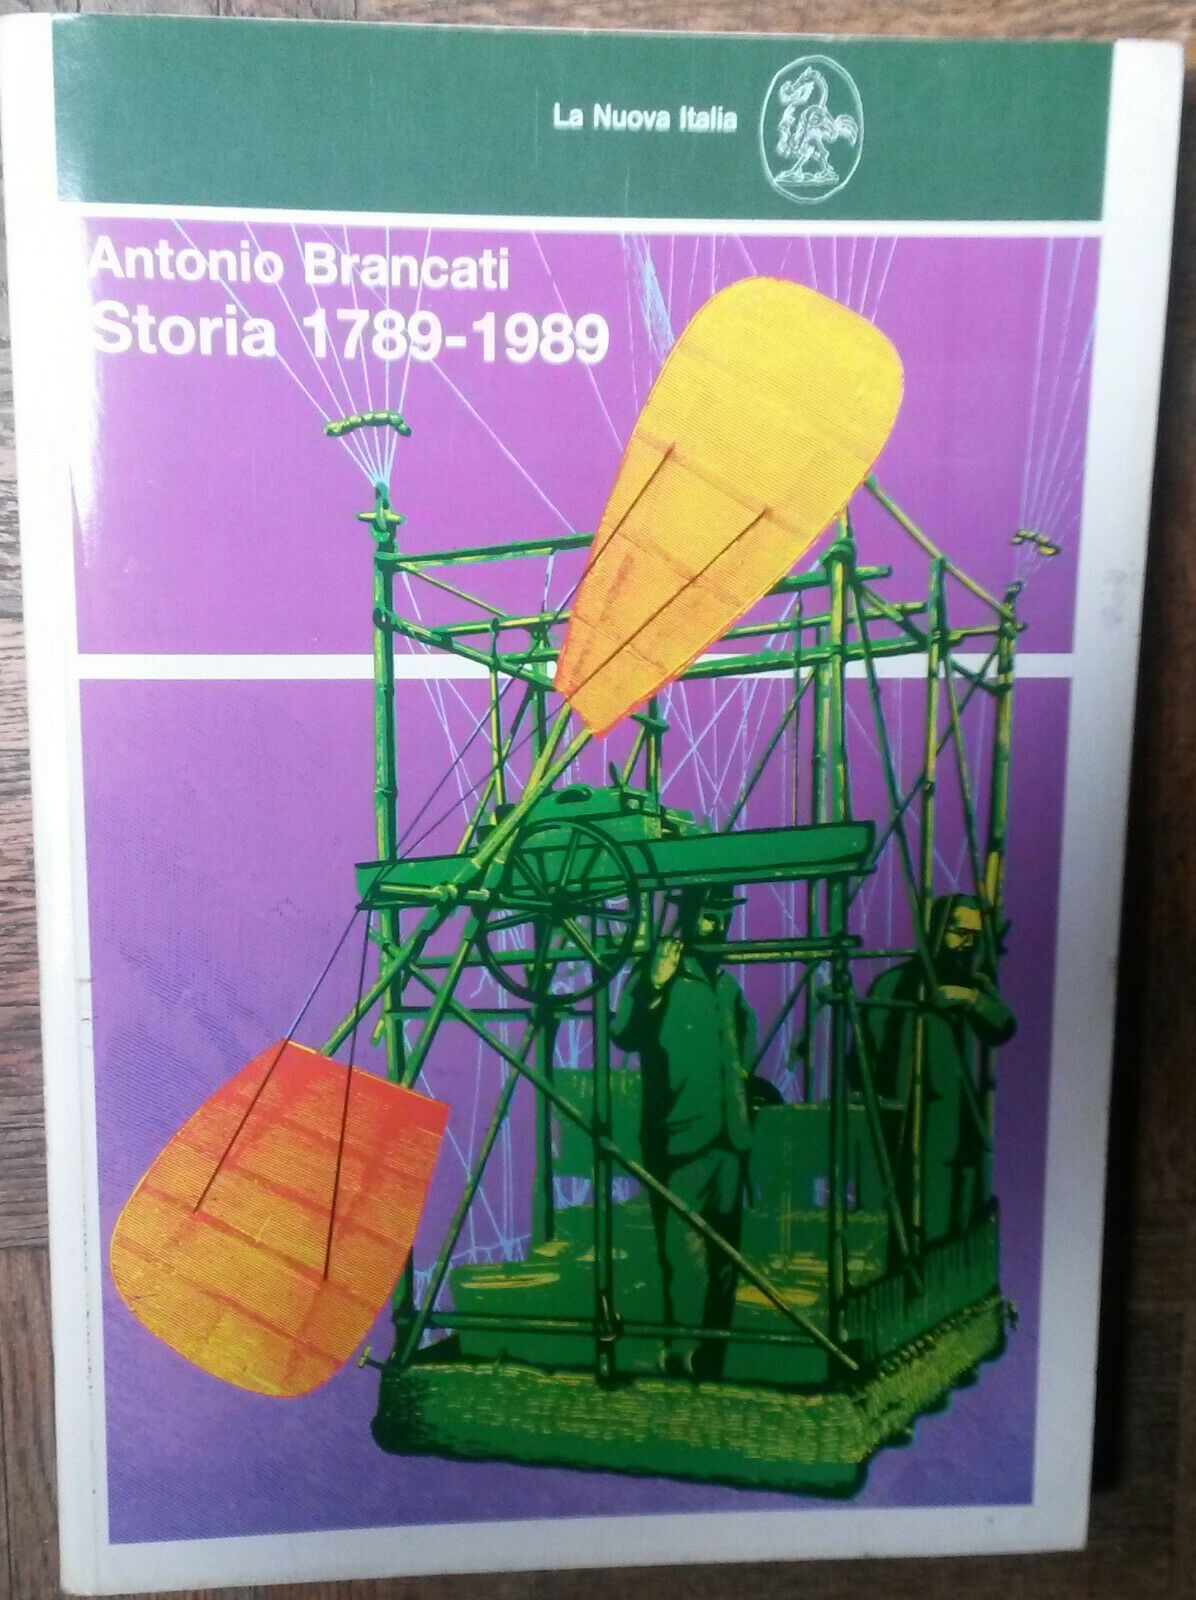 Storia 1789 -1989 - Antonio Brancati - La Nuova Italia,1995 - R libro usato